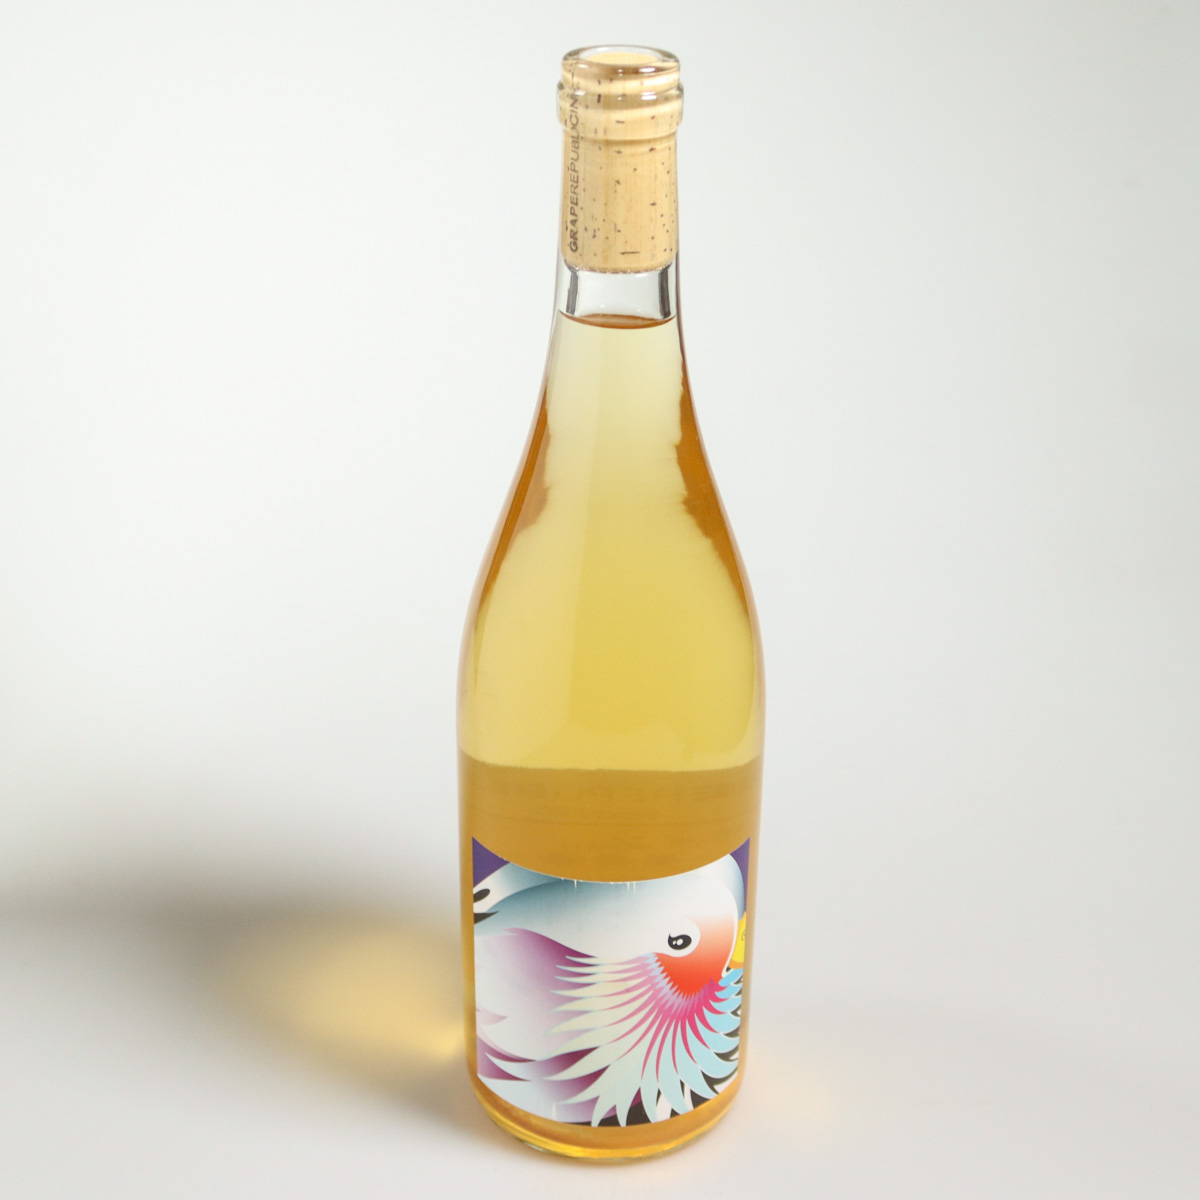 vin nature japonais blanc bianco 2020 grape republic